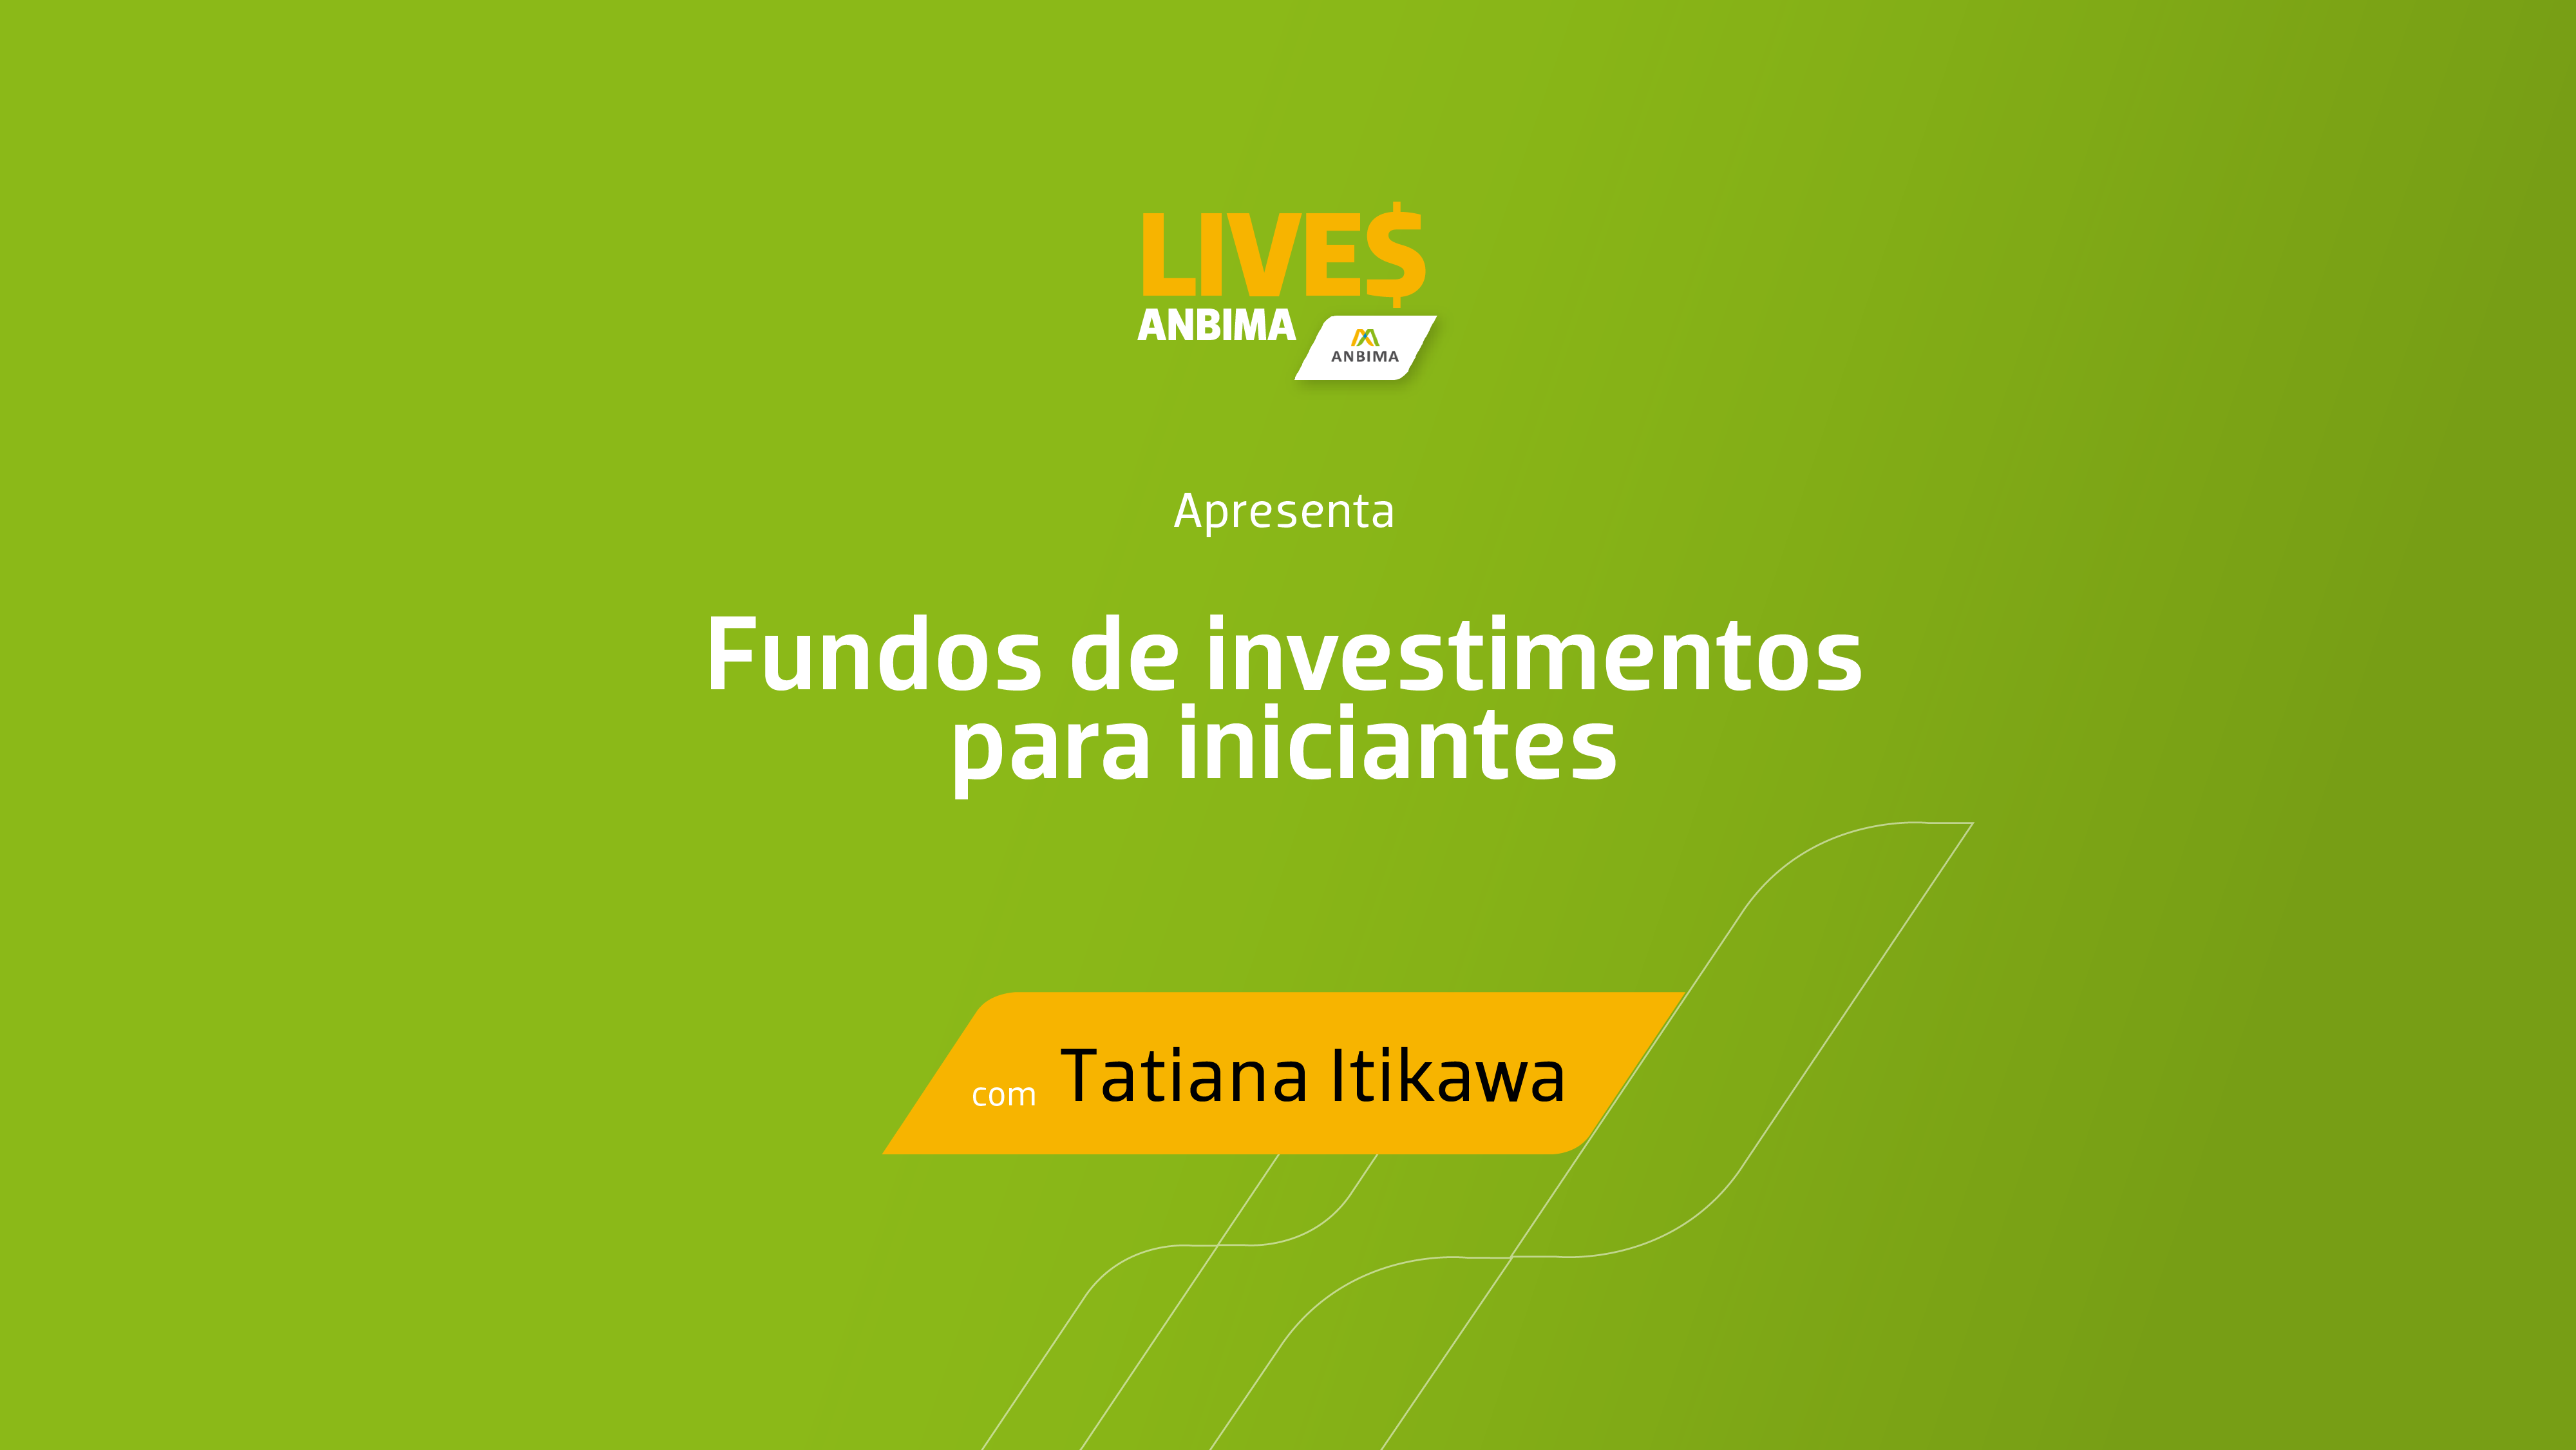 Fundos de investimento - Live Enef